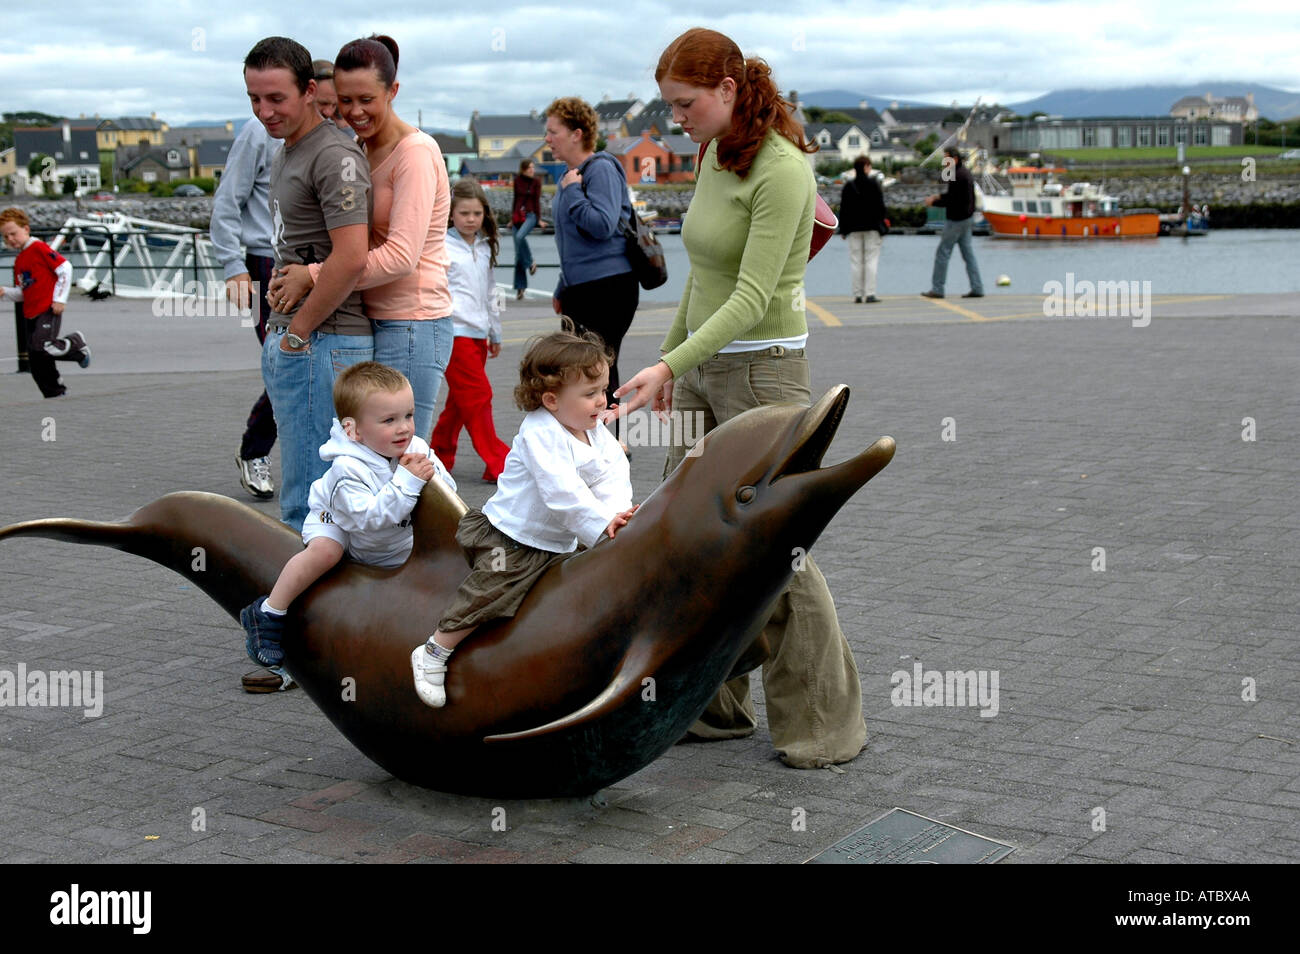 Les enfants voyagent la figure de bronze du dauphin champignons qui a contribué à faire une destination doit voir Dingle Banque D'Images